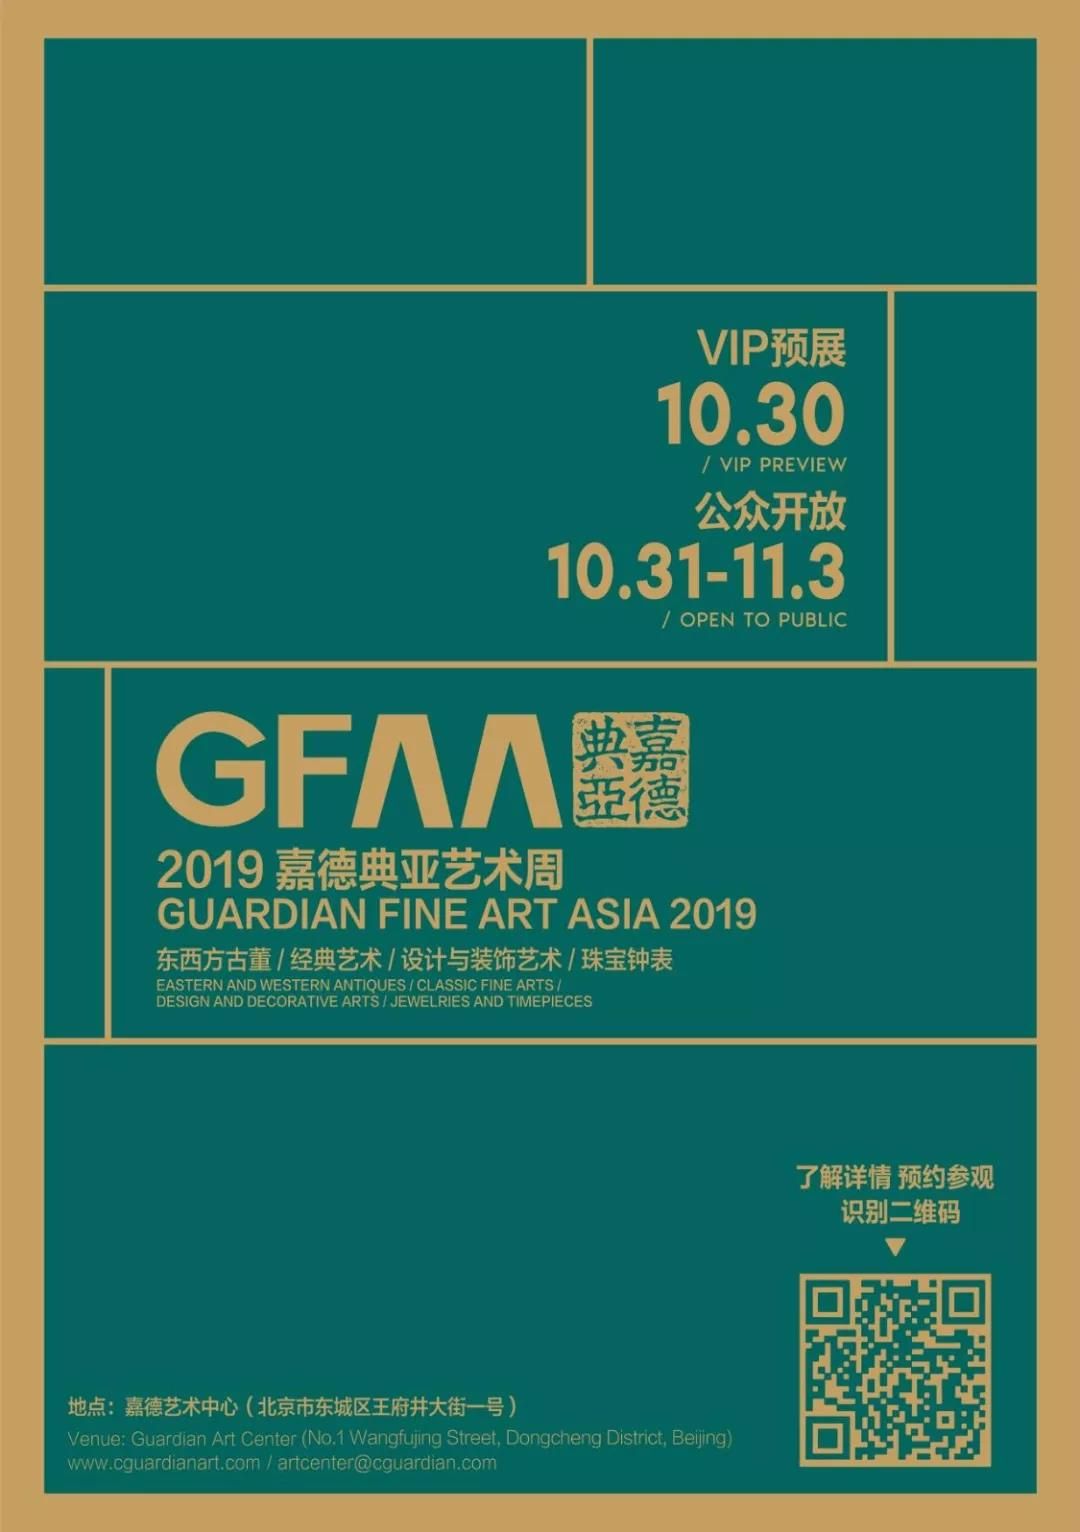 GFAA 2019丨第六届嘉德典亚艺术周